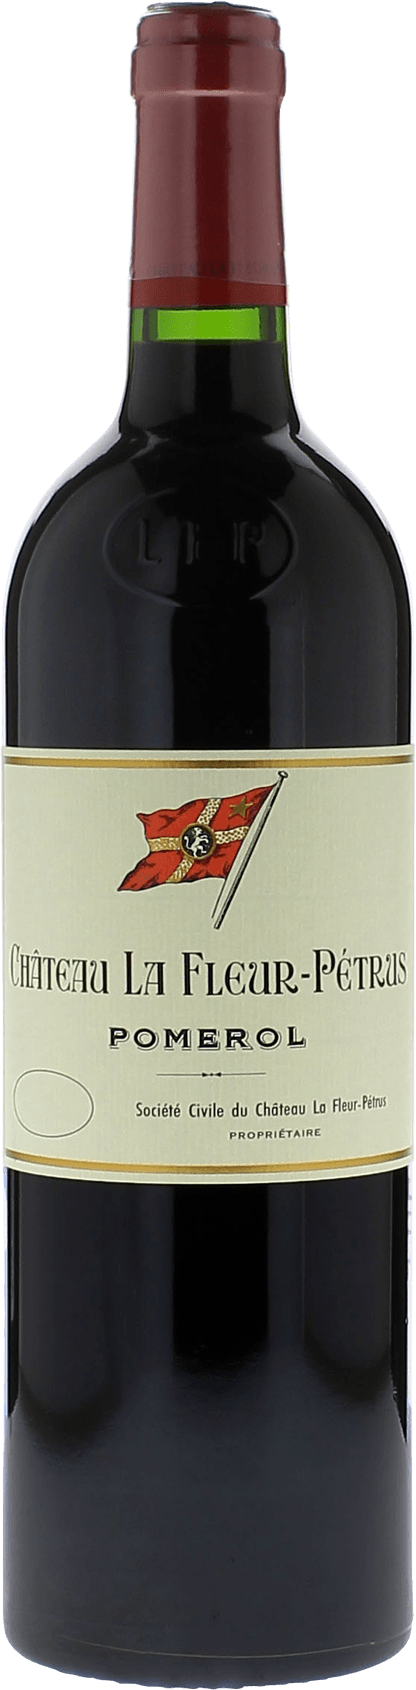 La fleur petrus 2018  Pomerol, Bordeaux rouge